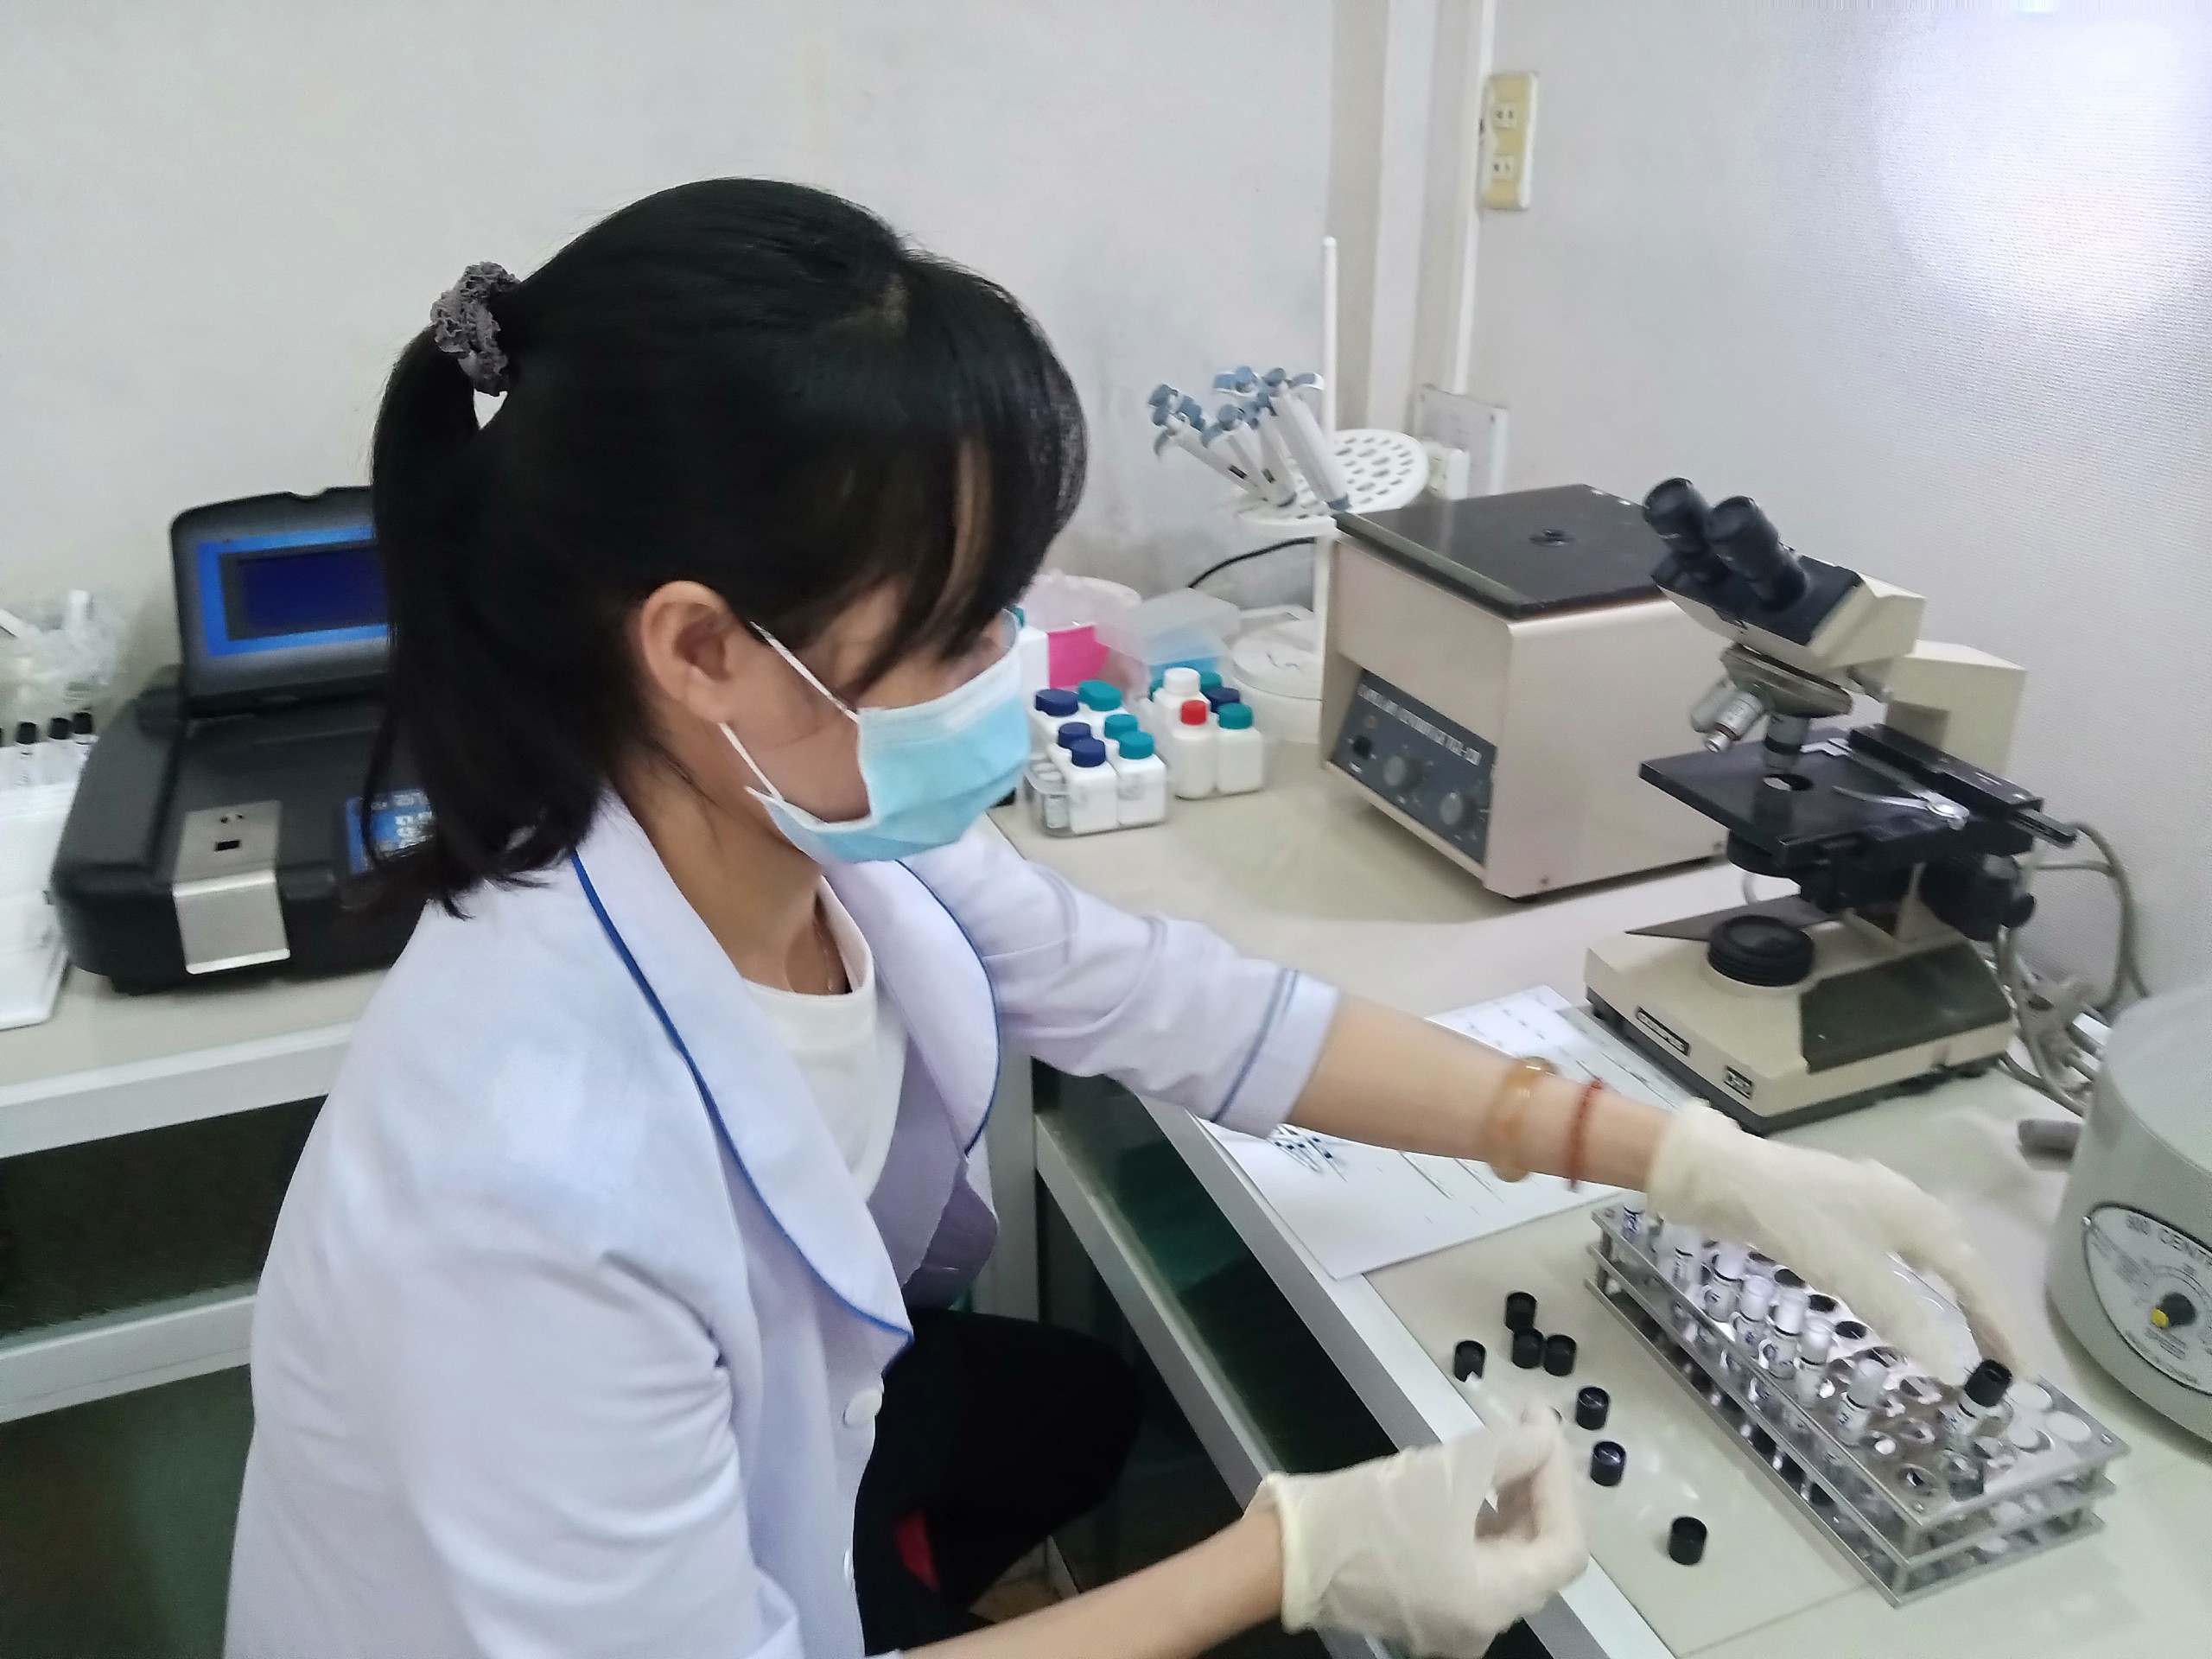 Phòng khám chẩn đoán Medic Sài Gòn